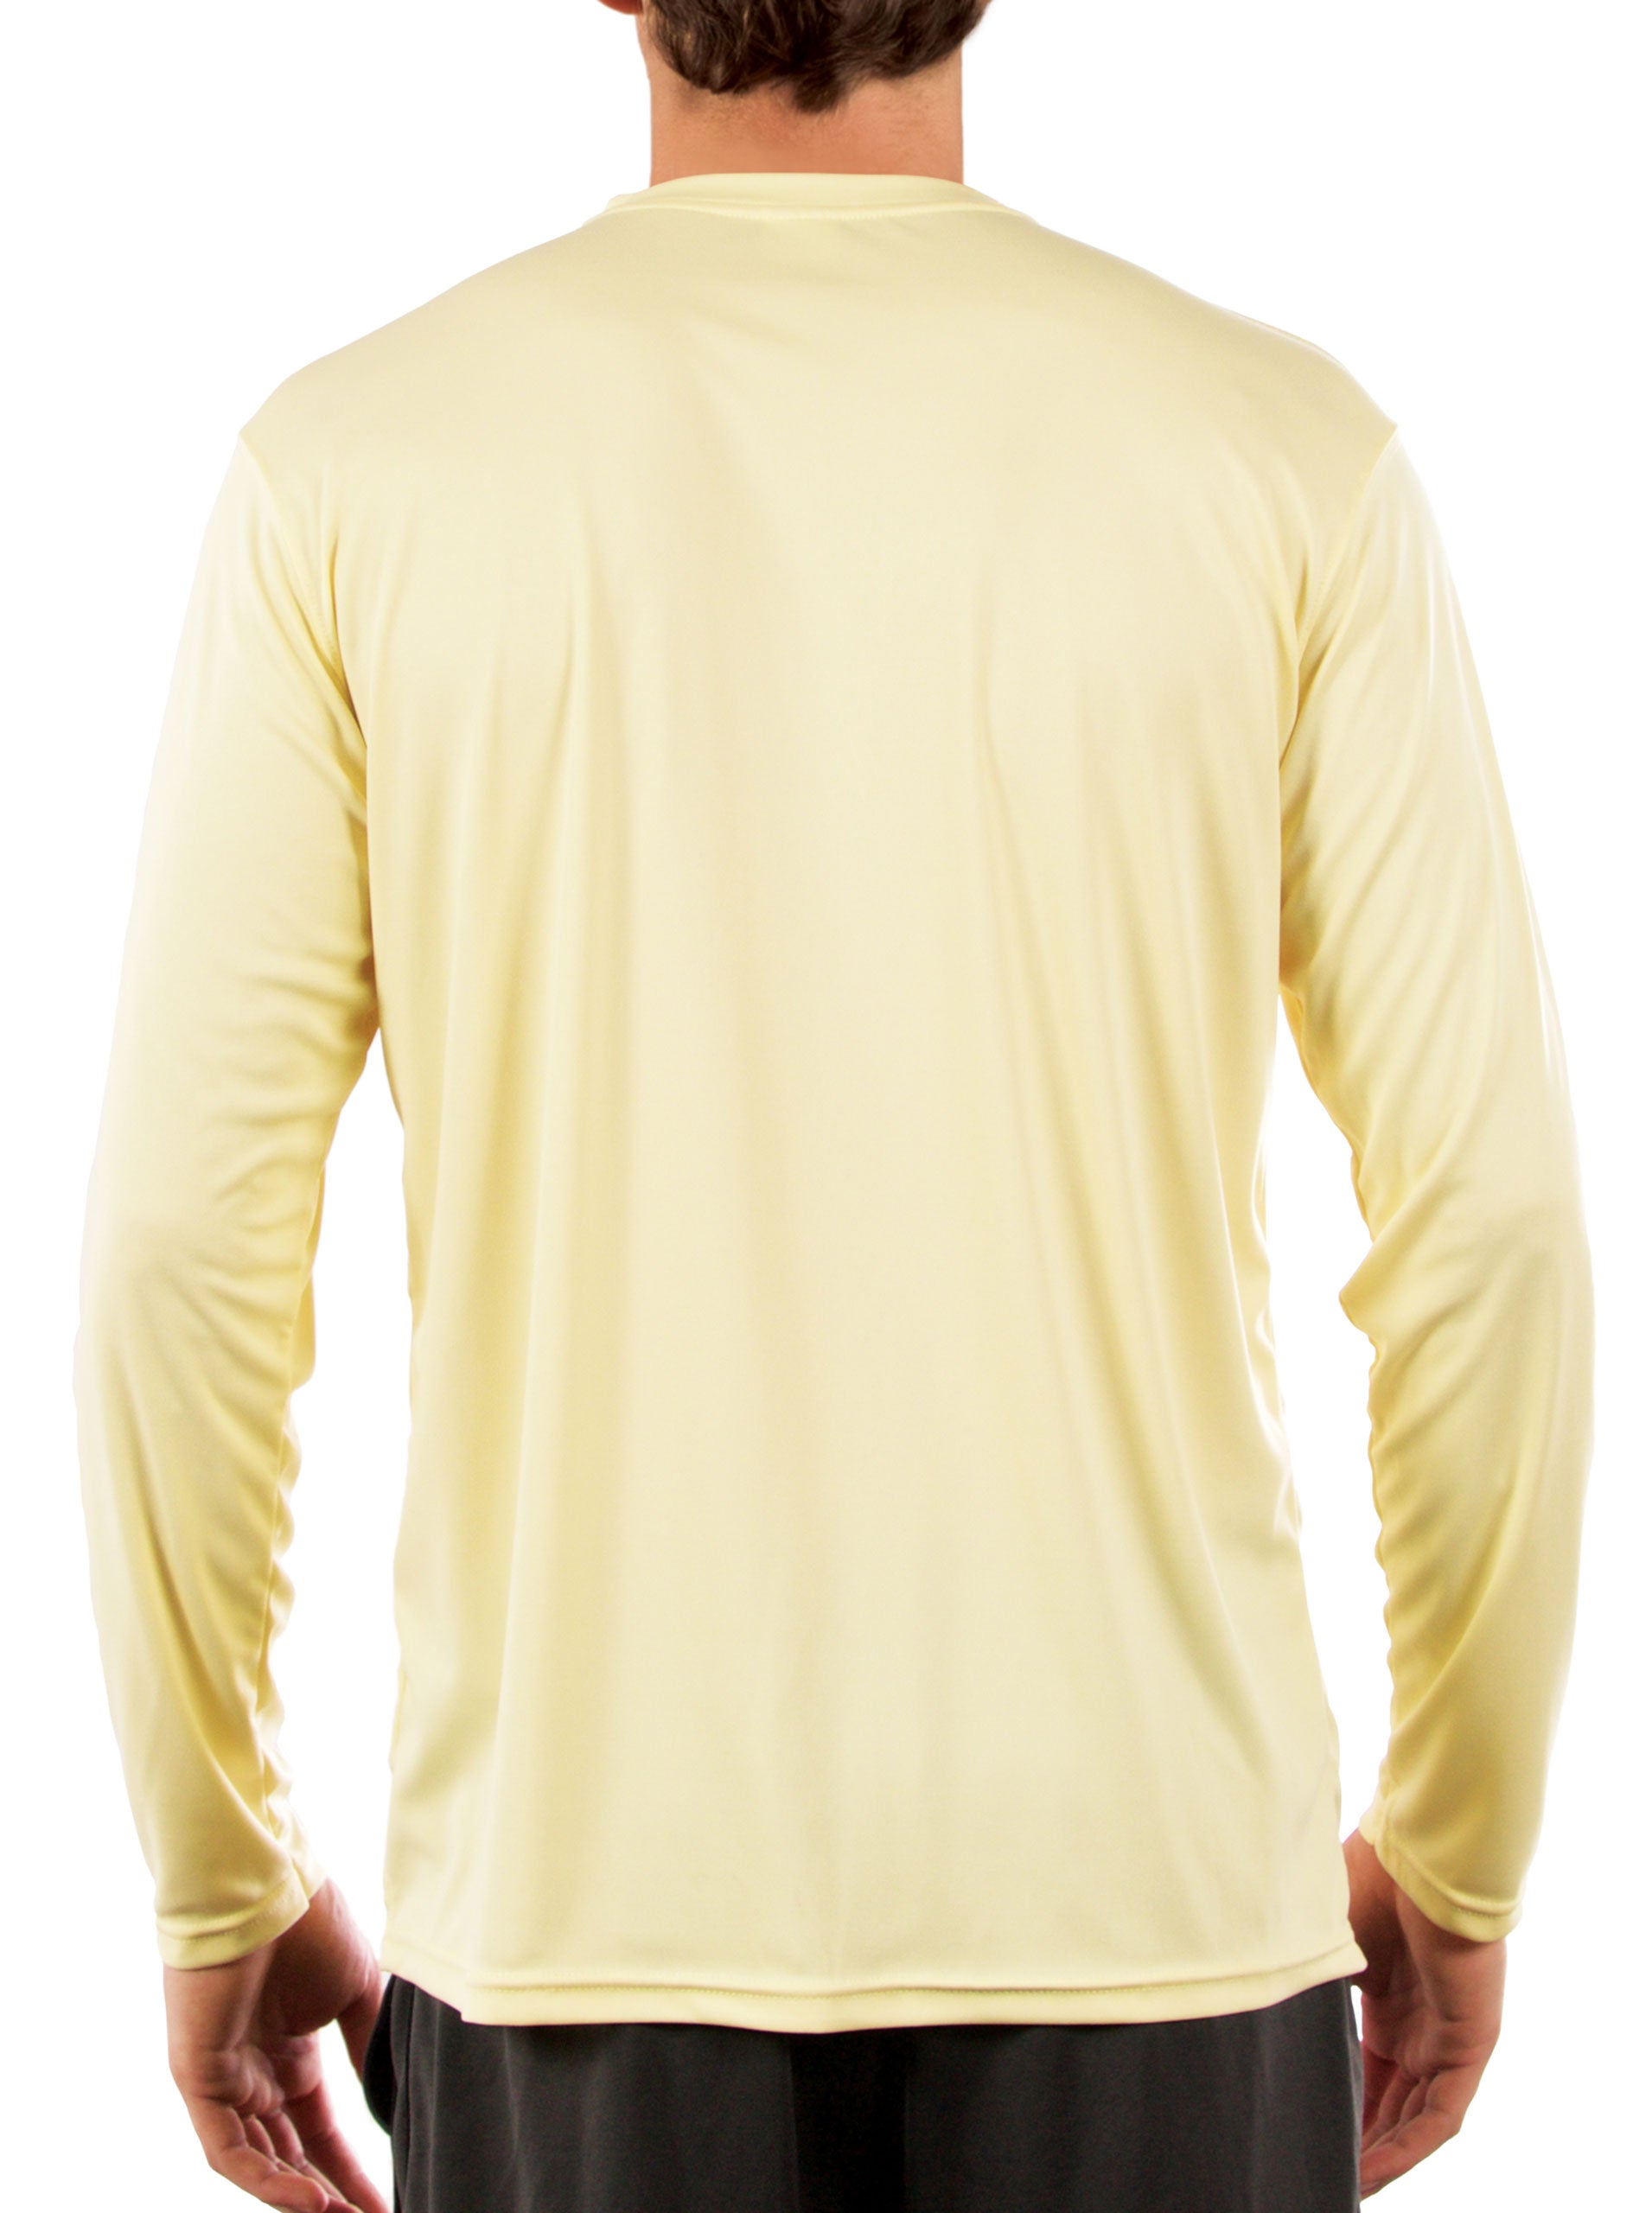 Men Fishing Shirts Long Sleeve T- Shirt UV UPF30 Quick Dry Fishing